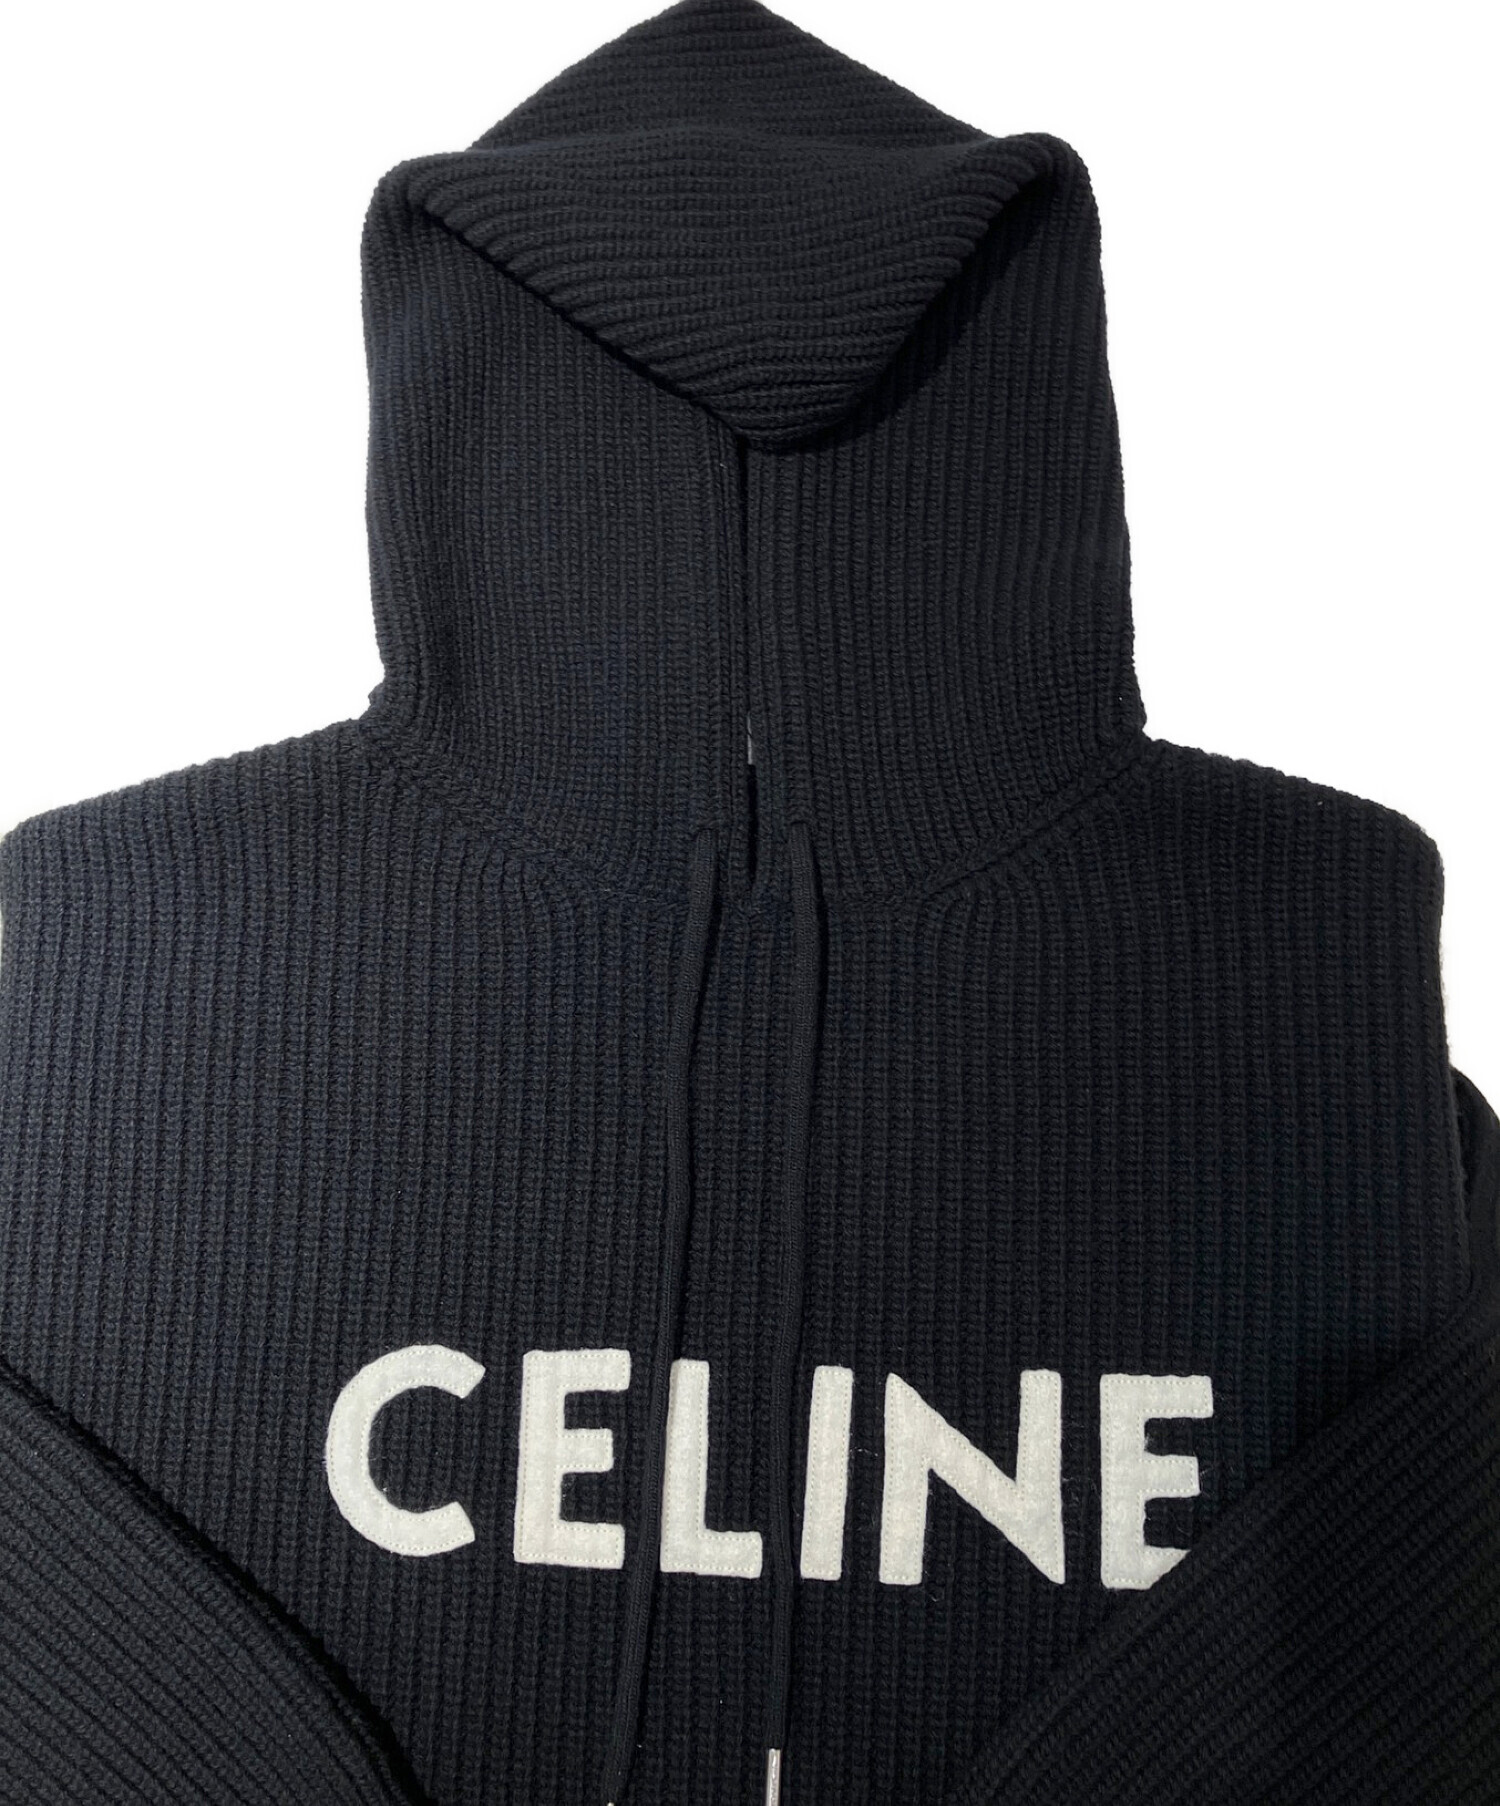 CELINE (セリーヌ) フード付きセーター / リブ編みウール ブラック サイズ:S